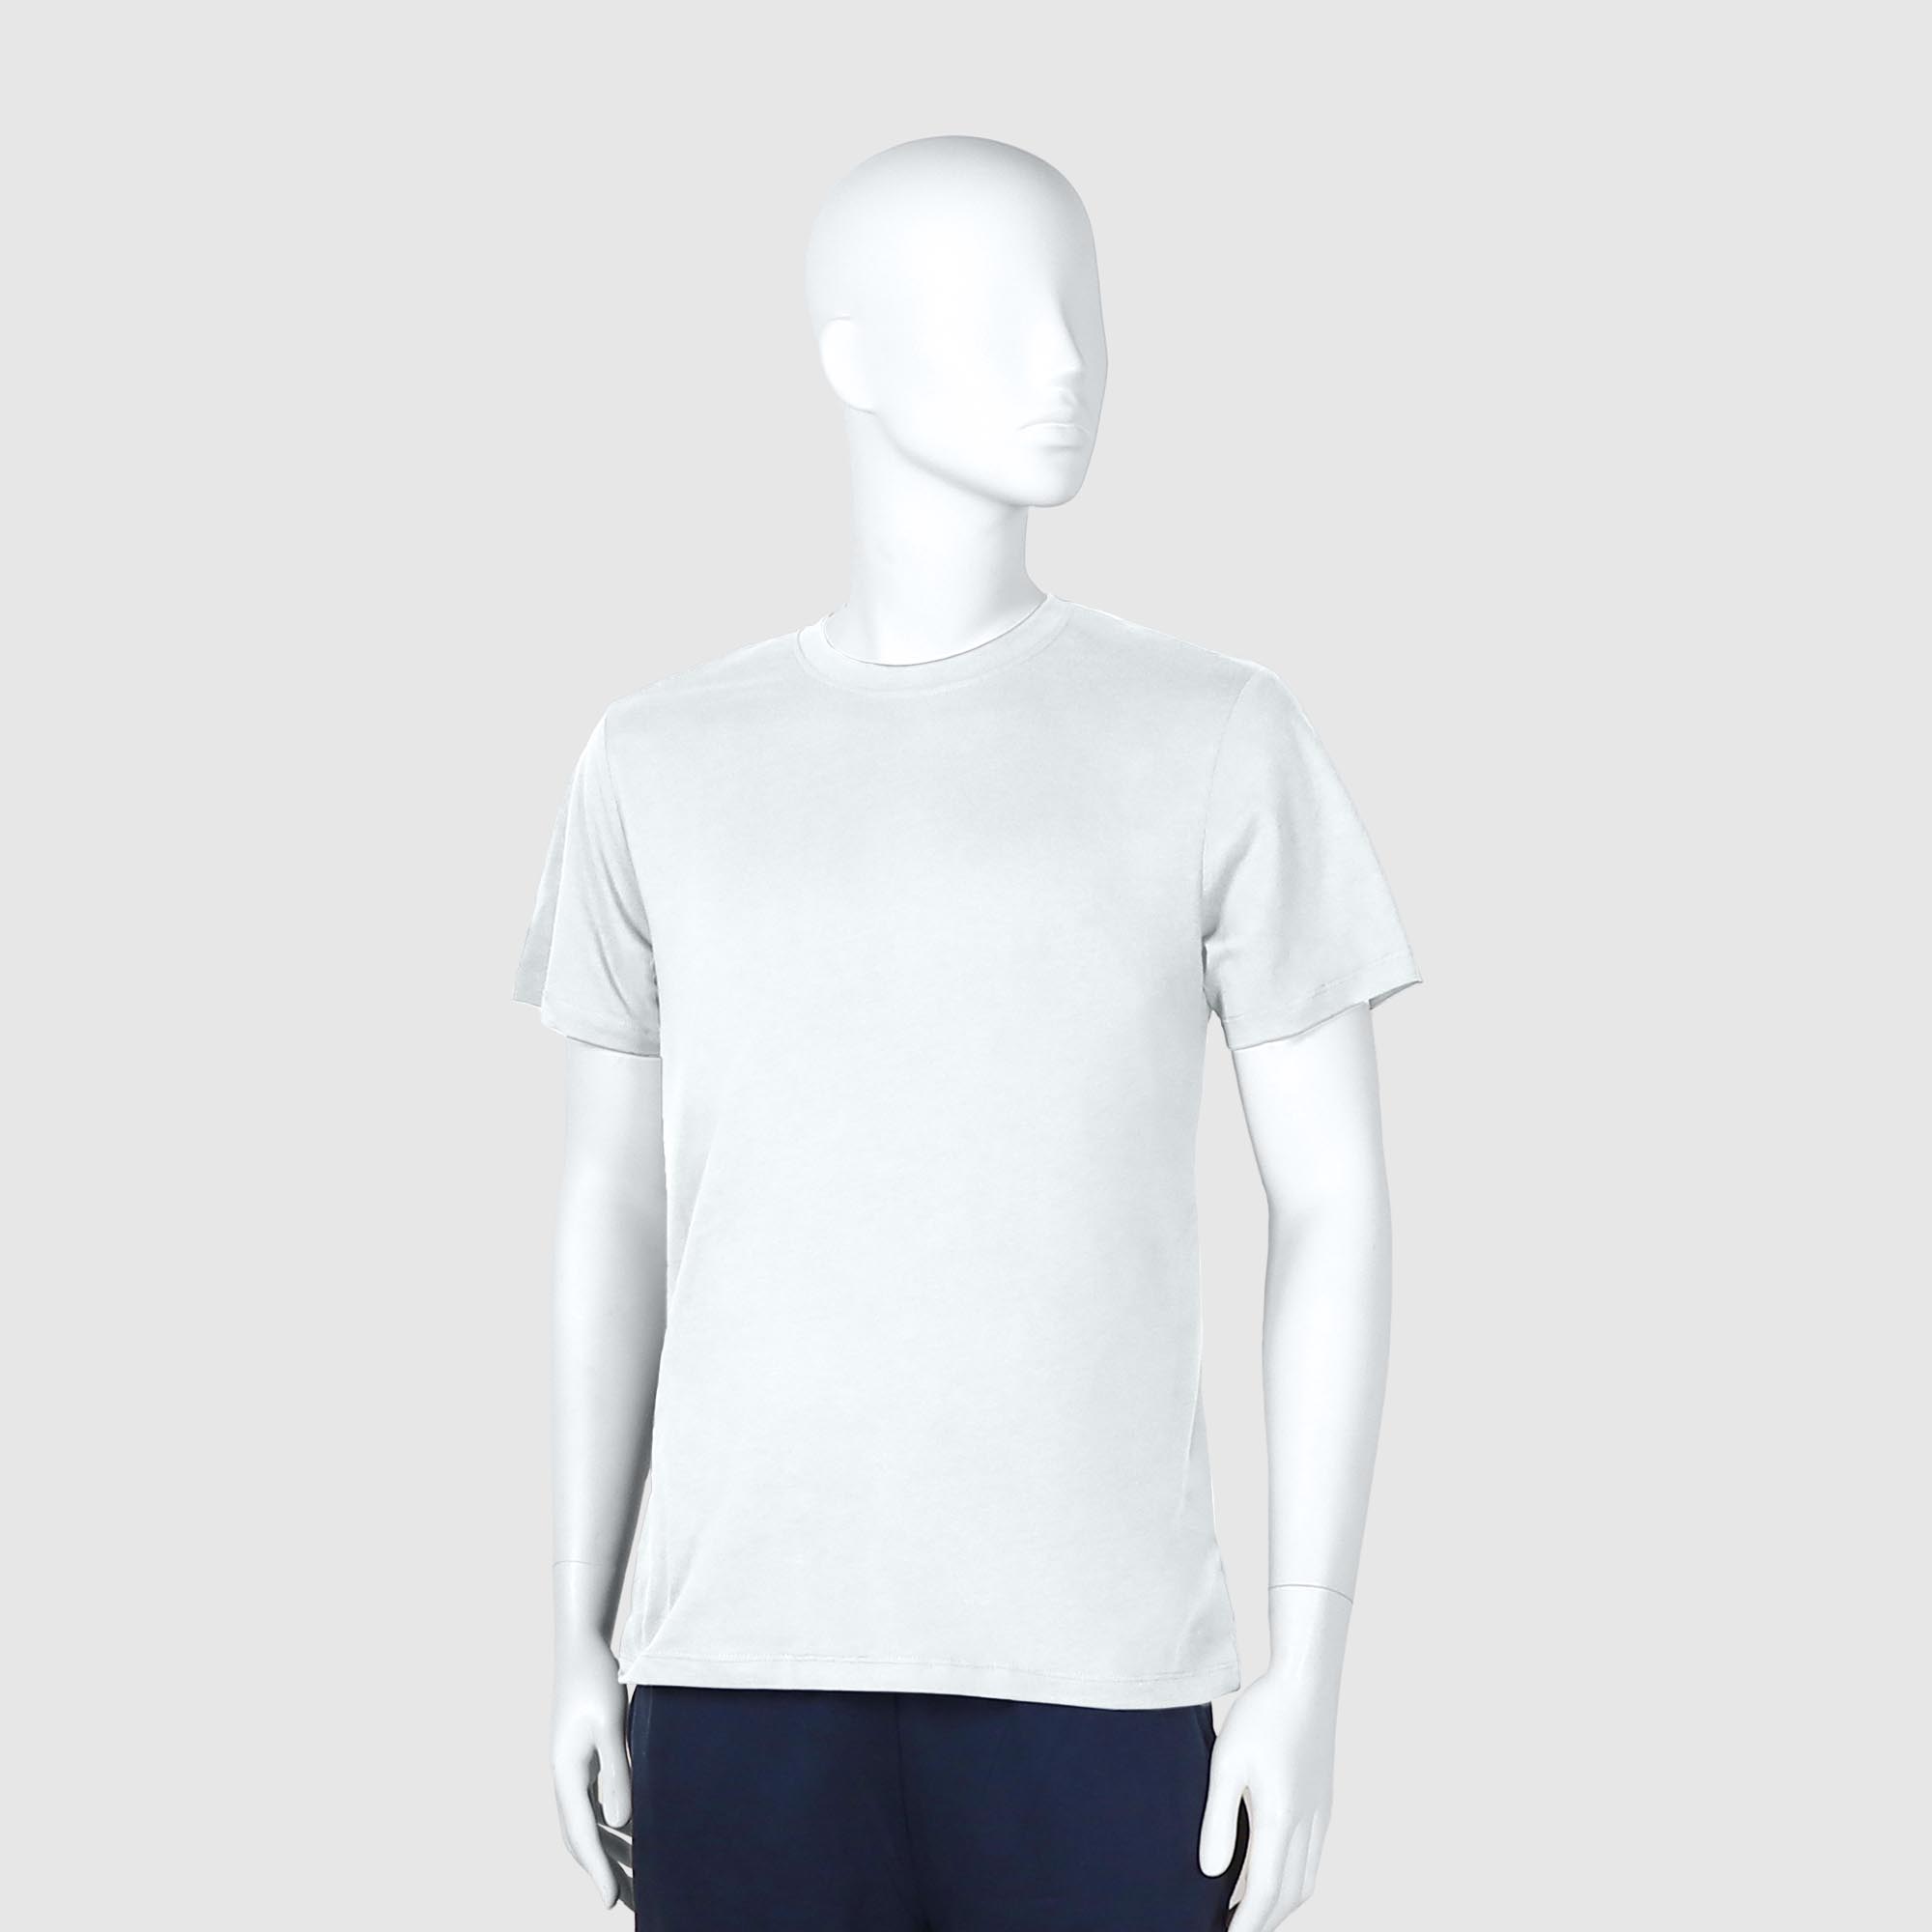 Мужская футболка Diva Teks белая (DTD-02), цвет белый, размер 48-50